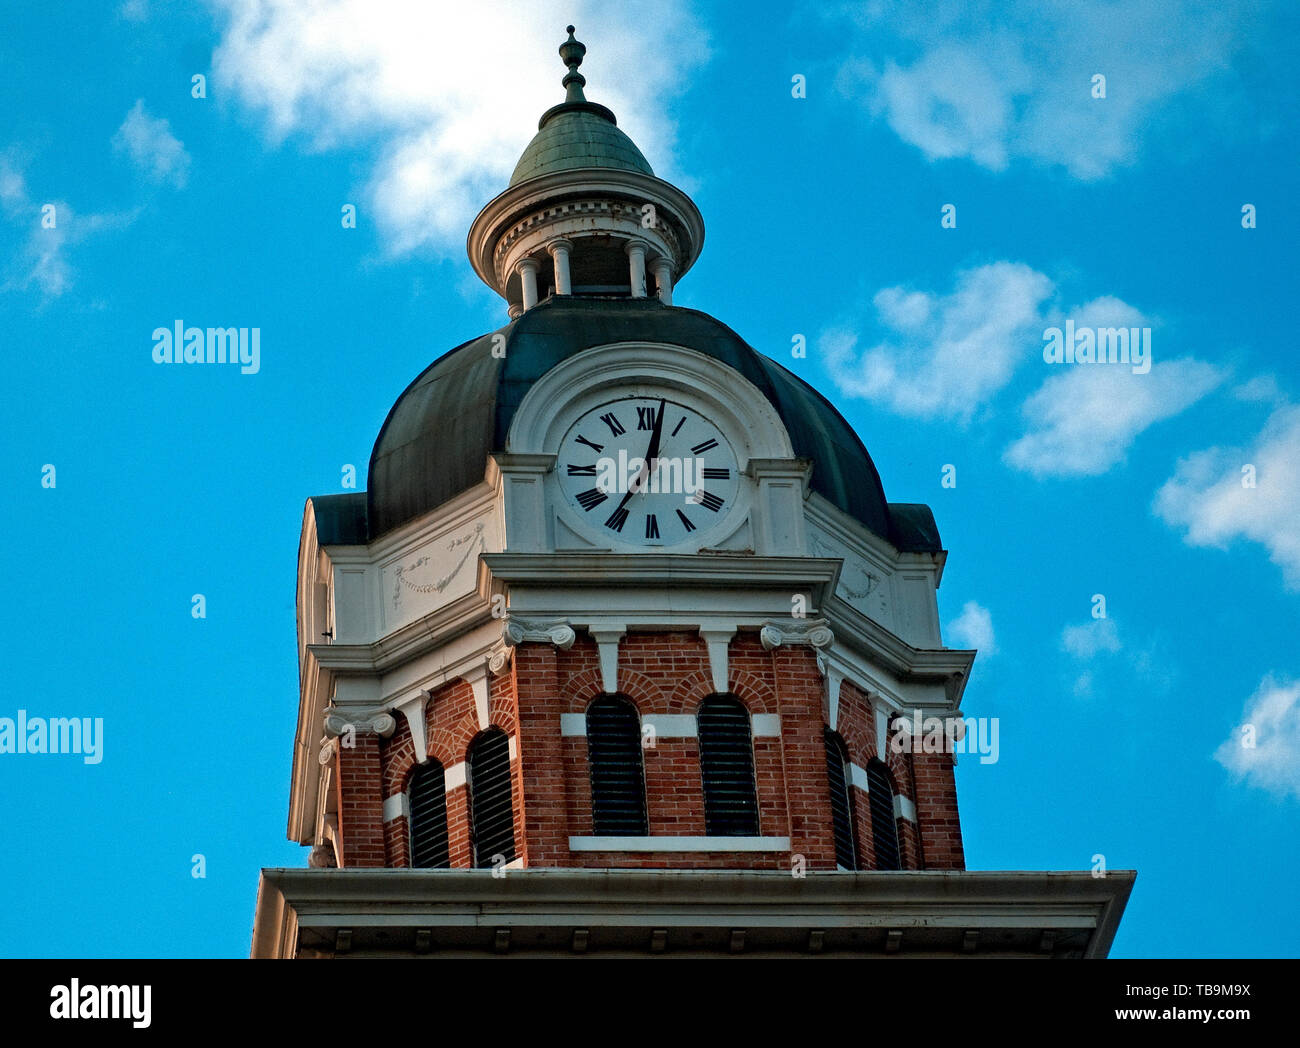 Der Glockenturm der Lowndes County Courthouse zeigt die Zeit an, in der Innenstadt von Columbus, Mississippi, 20. April 2010. Stockfoto